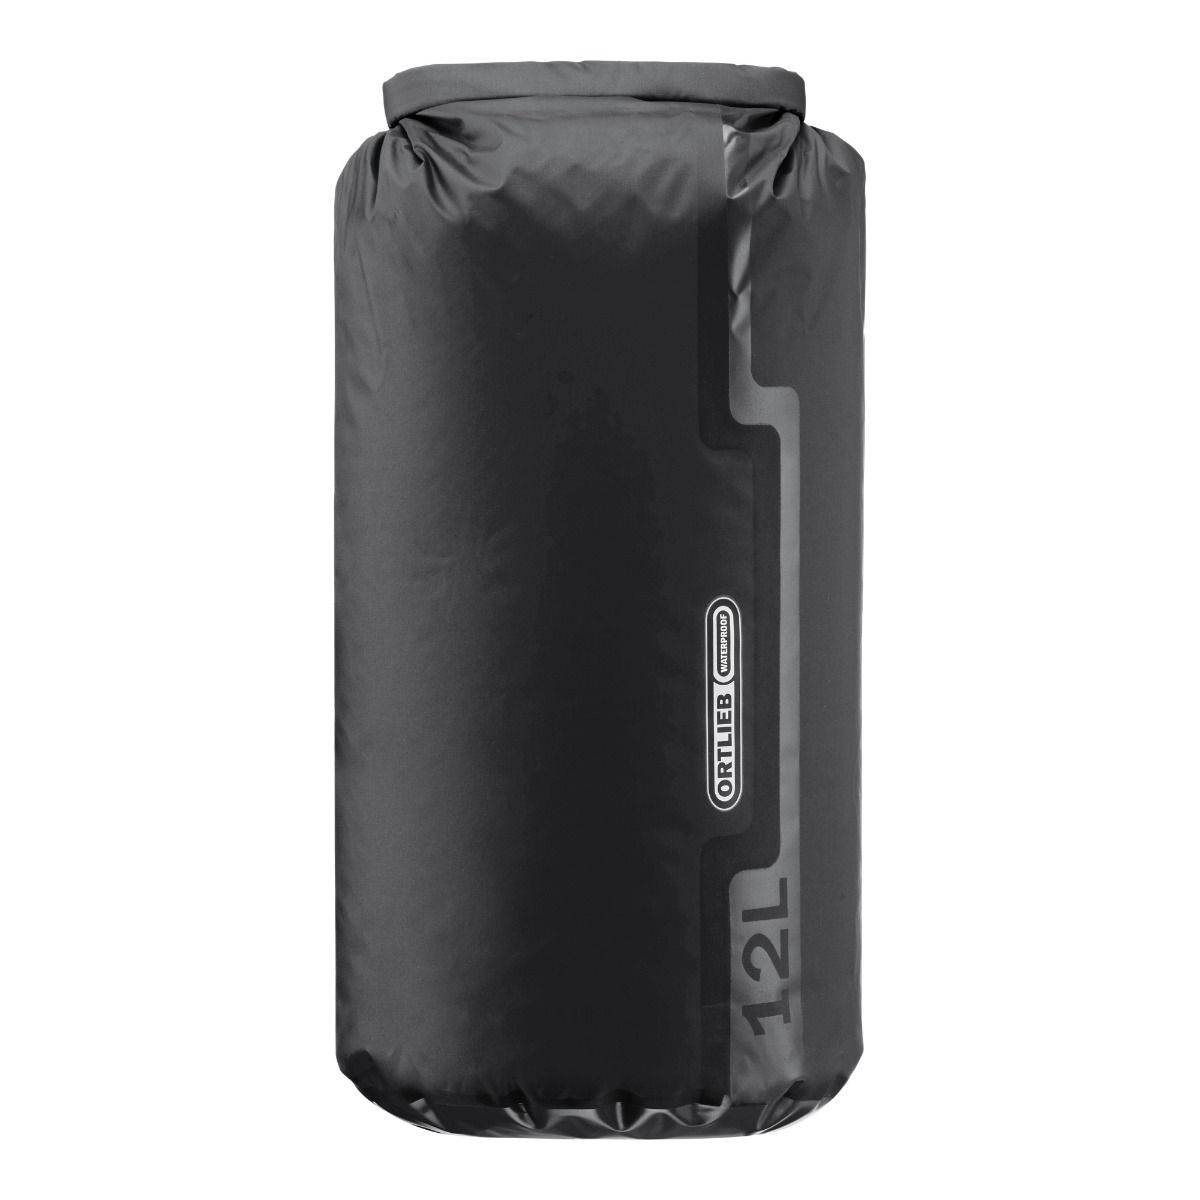 Produktbild von ORTLIEB Dry-Bag PS10 - 12L Packsack - schwarz